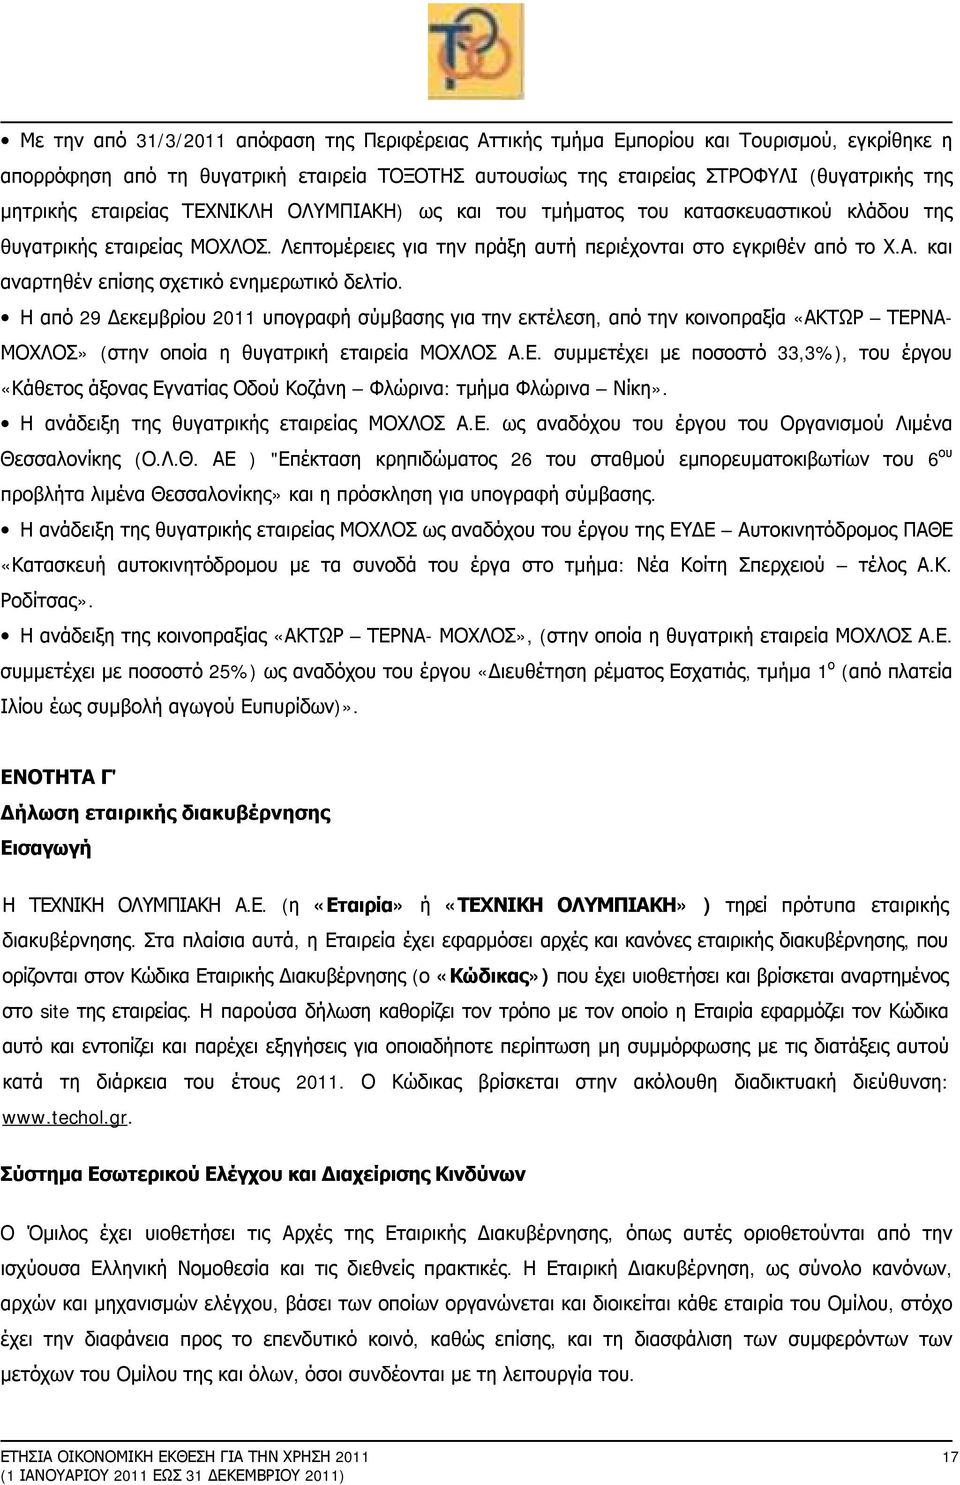 Η από 29 Δεκεμβρίου 2011 υπογραφή σύμβασης για την εκτέλεση, από την κοινοπραξία «ΑΚΤΩΡ ΤΕΡΝΑ- ΜΟΧΛΟΣ» (στην οποία η θυγατρική εταιρεία ΜΟΧΛΟΣ Α.Ε. συμμετέχει με ποσοστό 33,3%), του έργου «Κάθετος άξονας Εγνατίας Οδού Κοζάνη Φλώρινα: τμήμα Φλώρινα Νίκη».